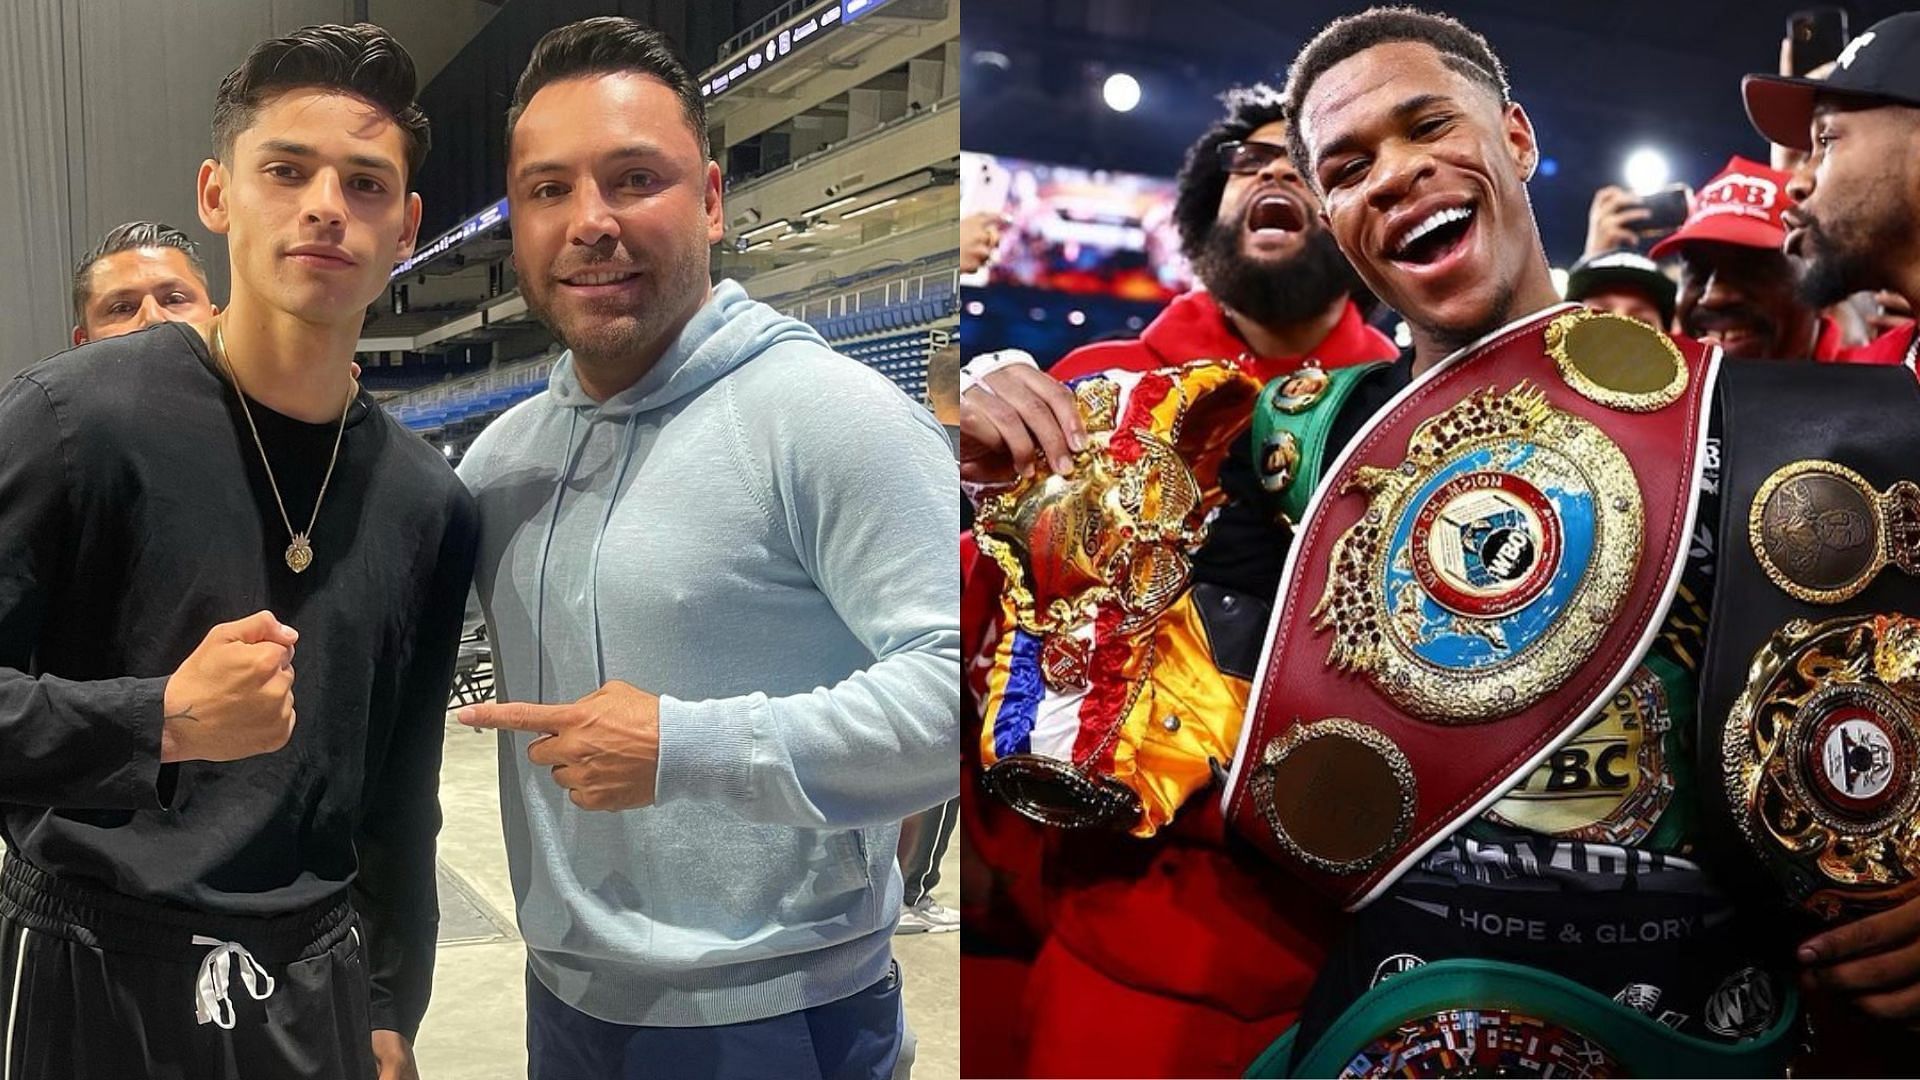 Ryan Garcia and Oscar De La Hoya (left - via Instagram @oscardelahoya) and Devin Haney (right - via Instagram @realdevinhaney)